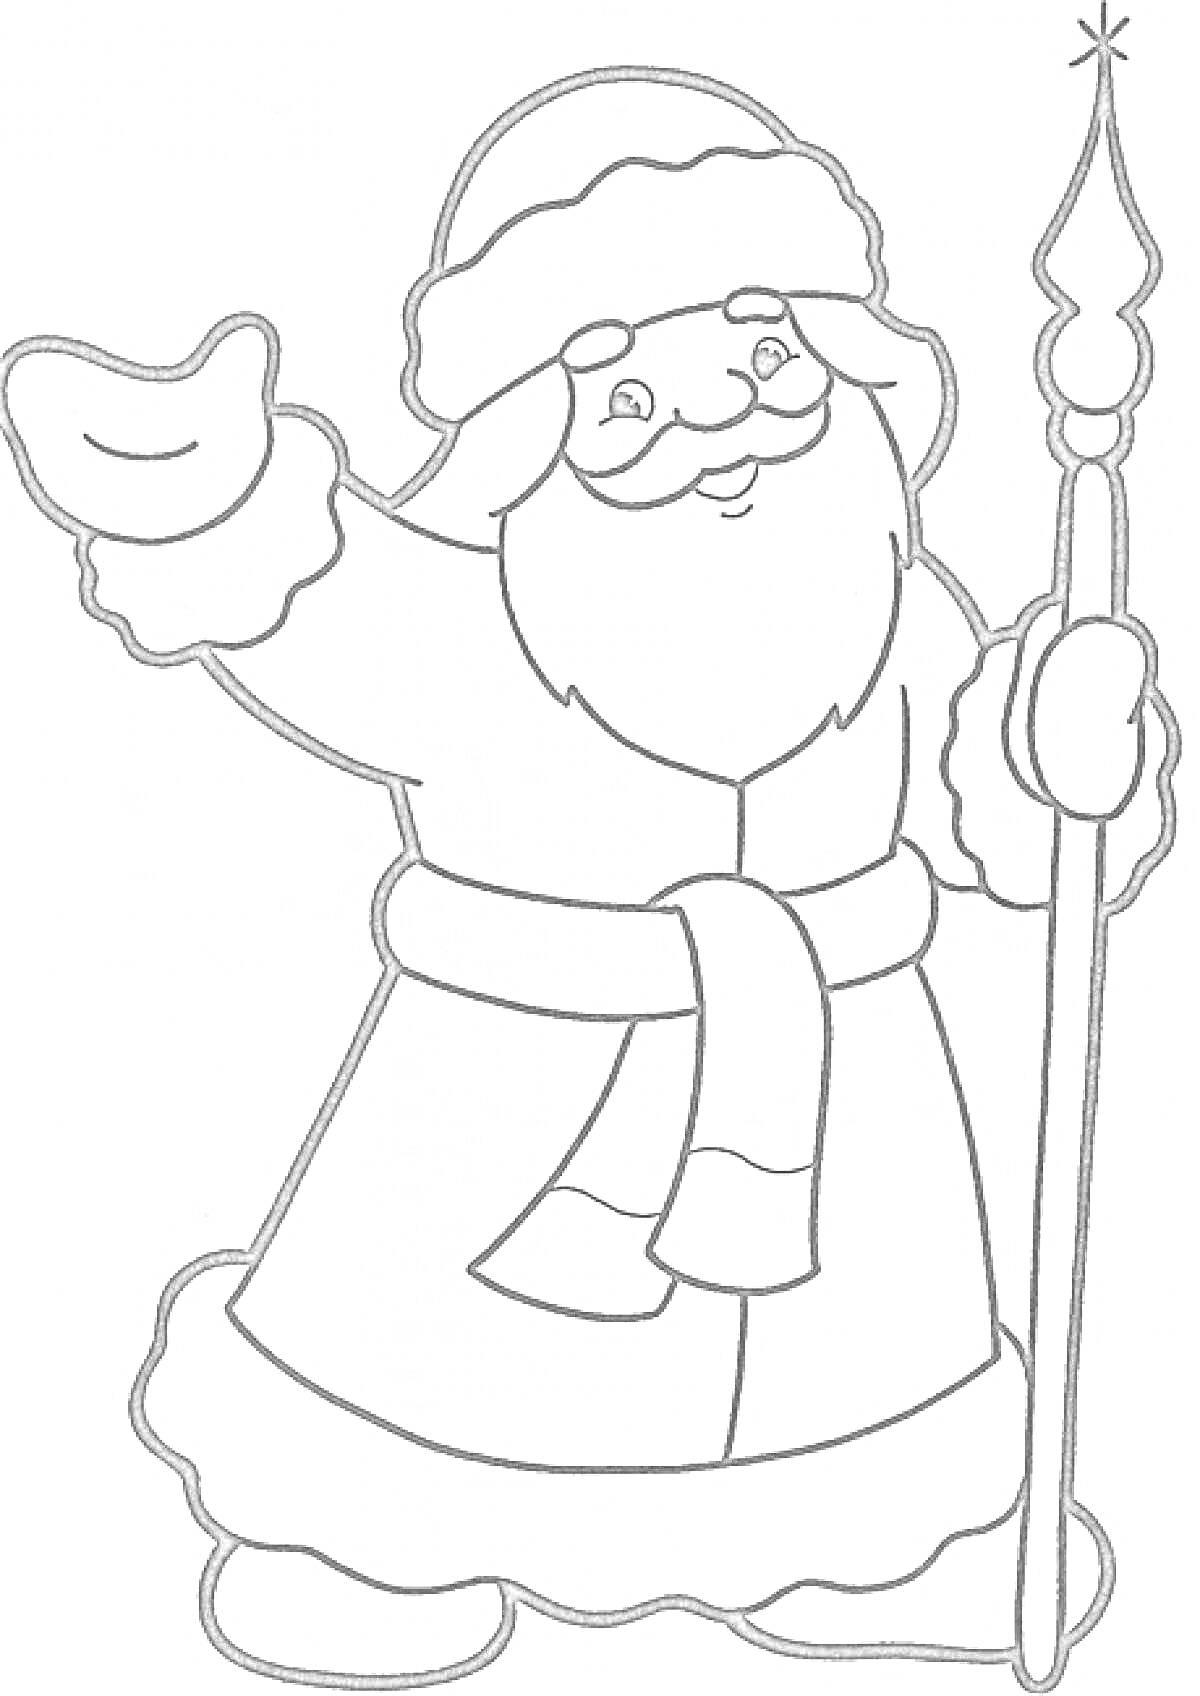 Раскраска Дед Мороз с посохом, поднимающий руку для приветствия